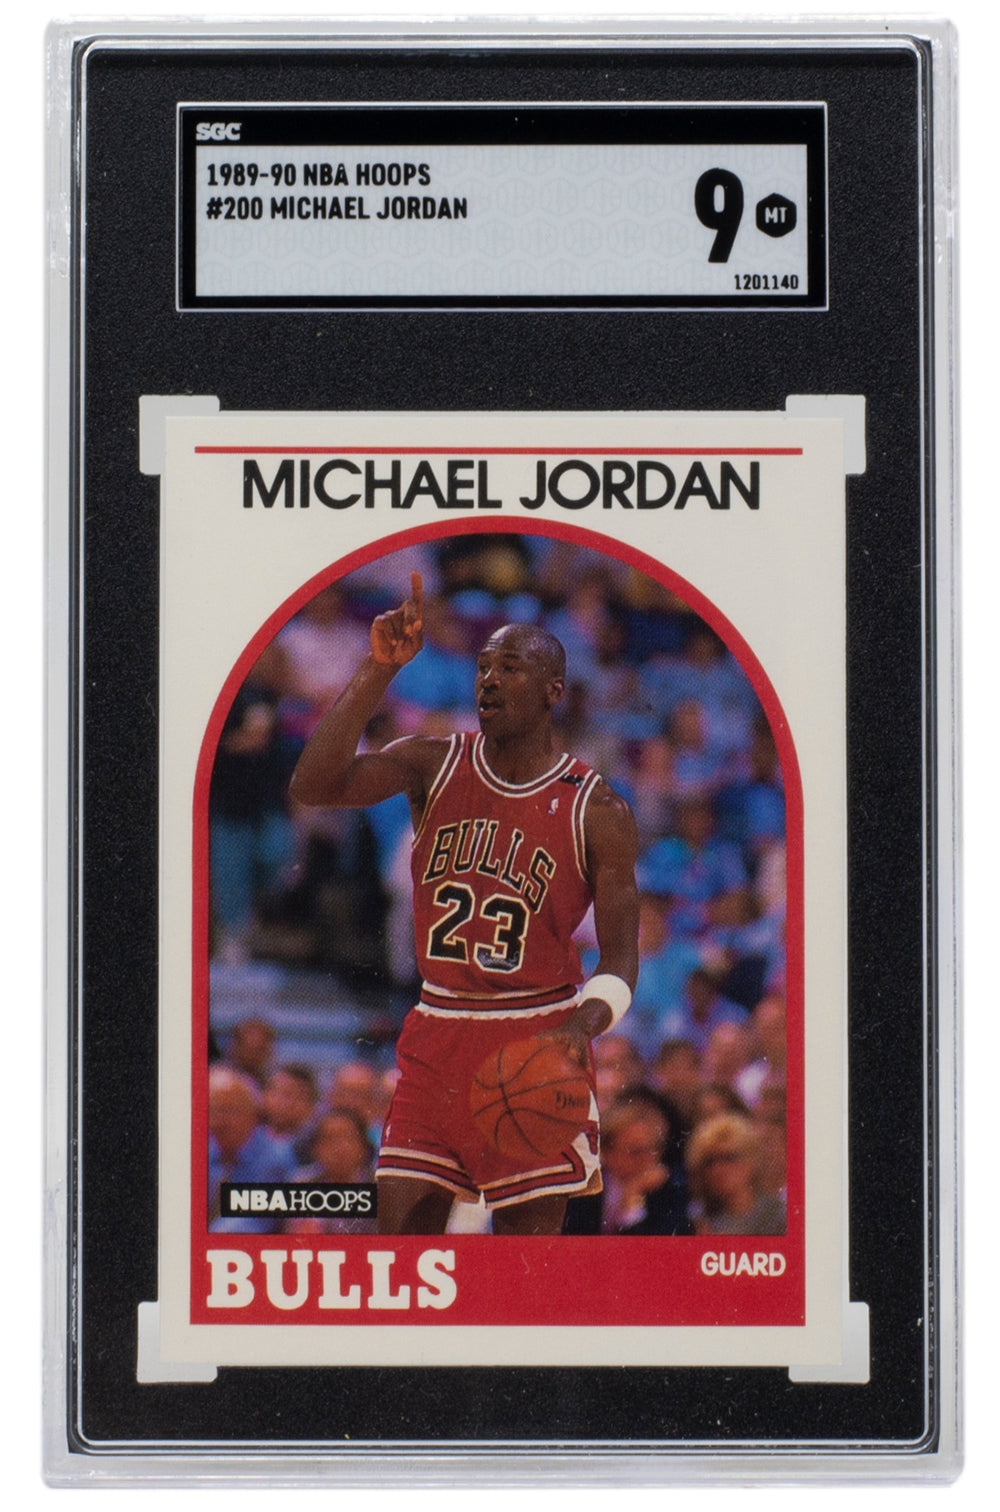 Michael Jordan 1989-90 NBA #200 Bulls Hoops Basketball Card SGC MT 9